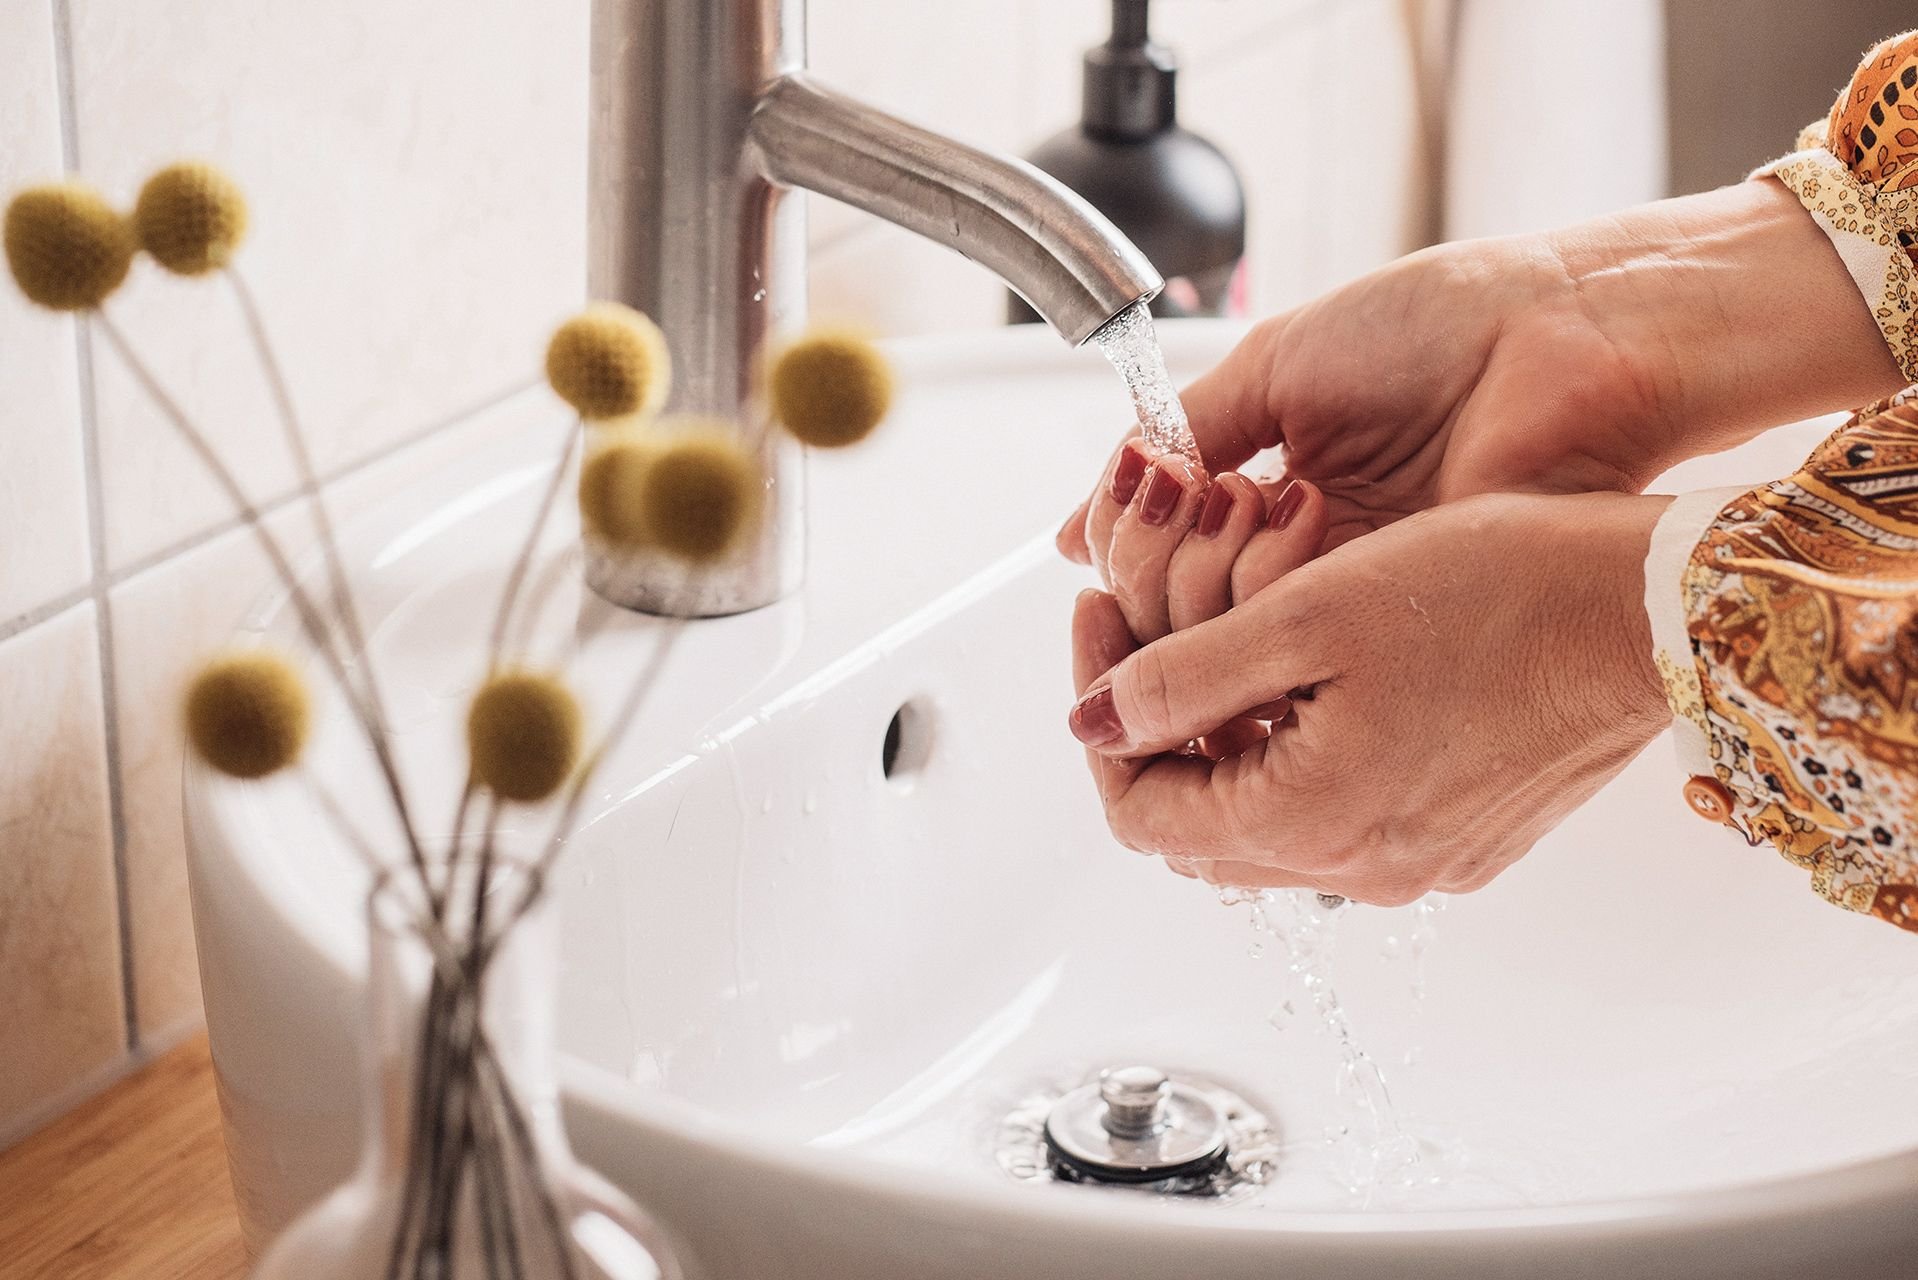 Неприятный мыть. Мытье рук. Личная гигиена мытье рук. Гигиена Эстетика. Девушка моет руки.